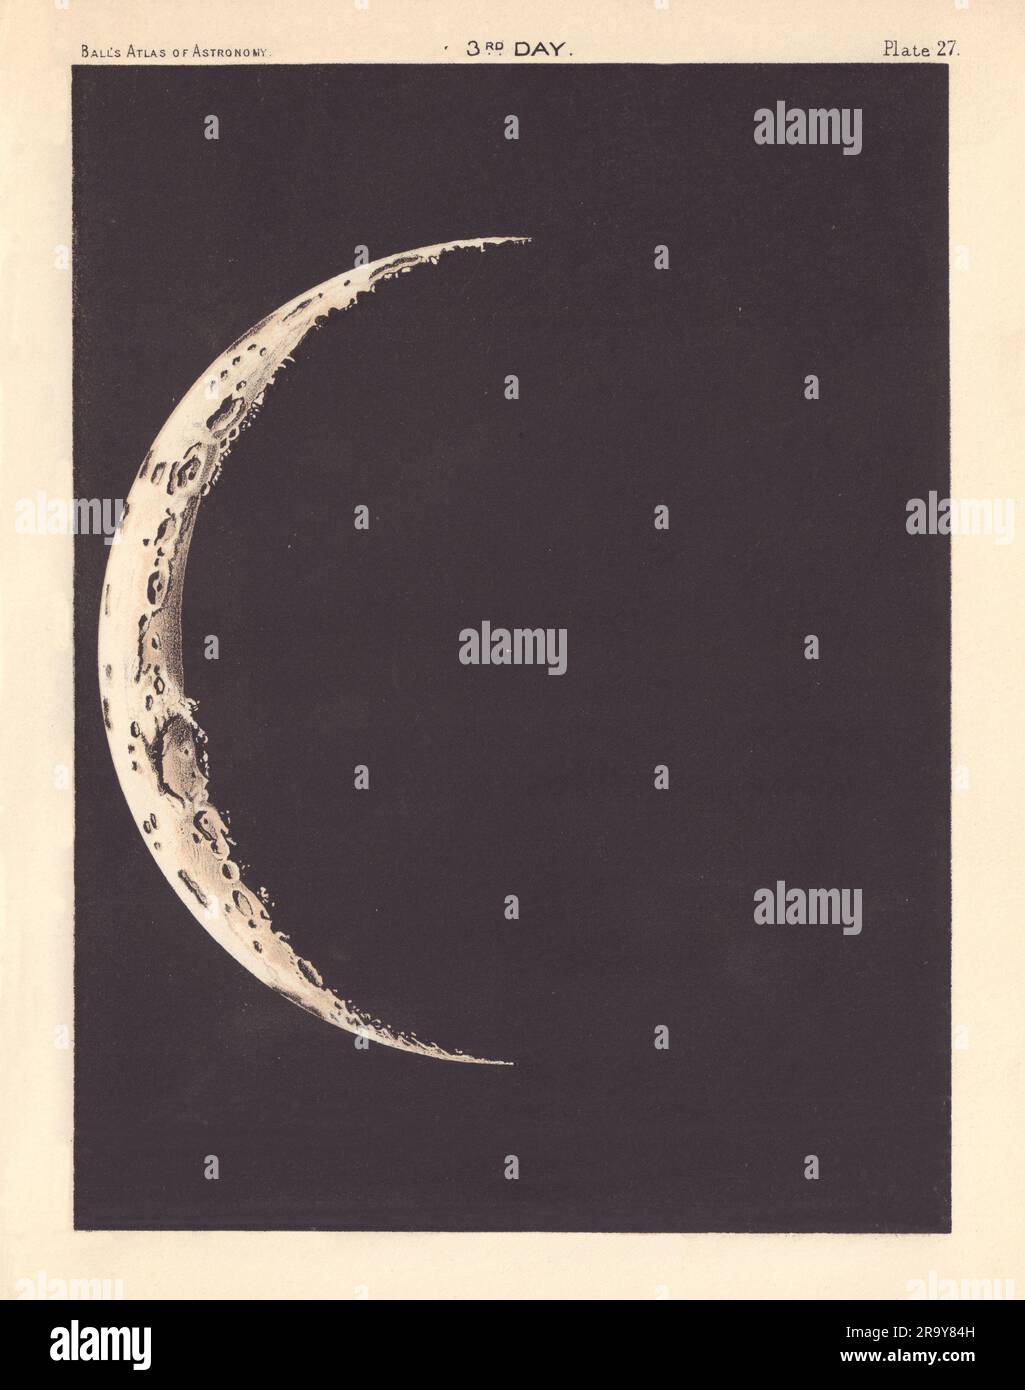 Phases of the Moon - 3. Day von Robert Ball. Astronomie 1892 alte antike Karte Stockfoto